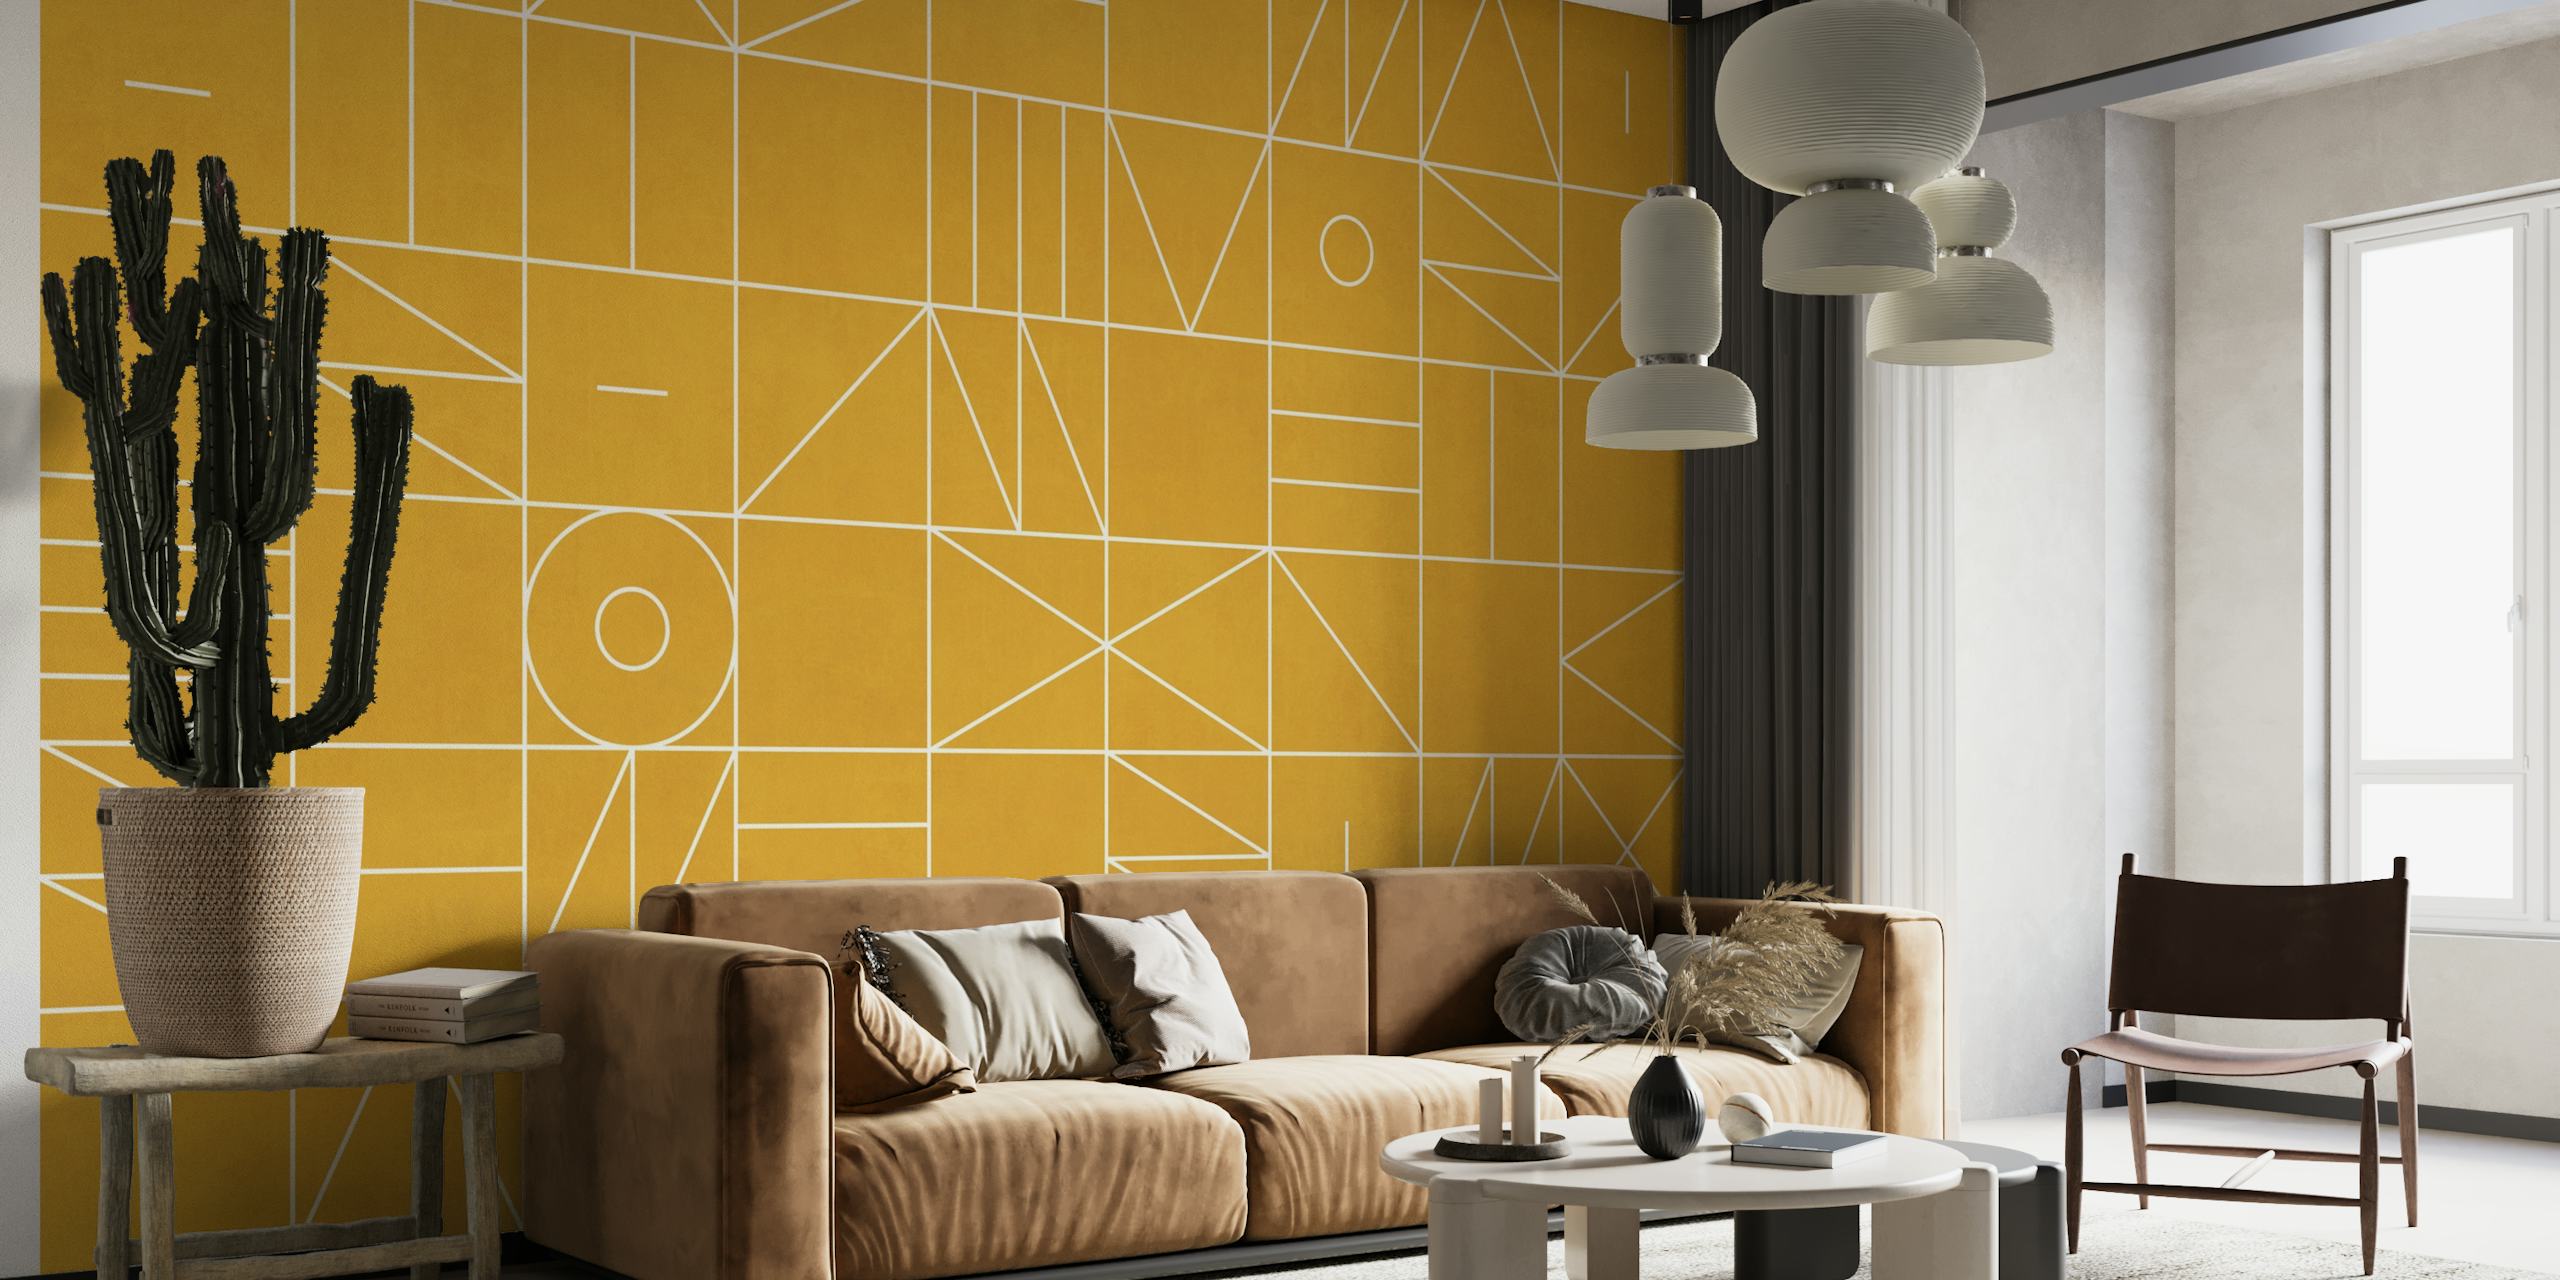 Fotomural con motivos geométricos en tono dorado con formas y líneas abstractas